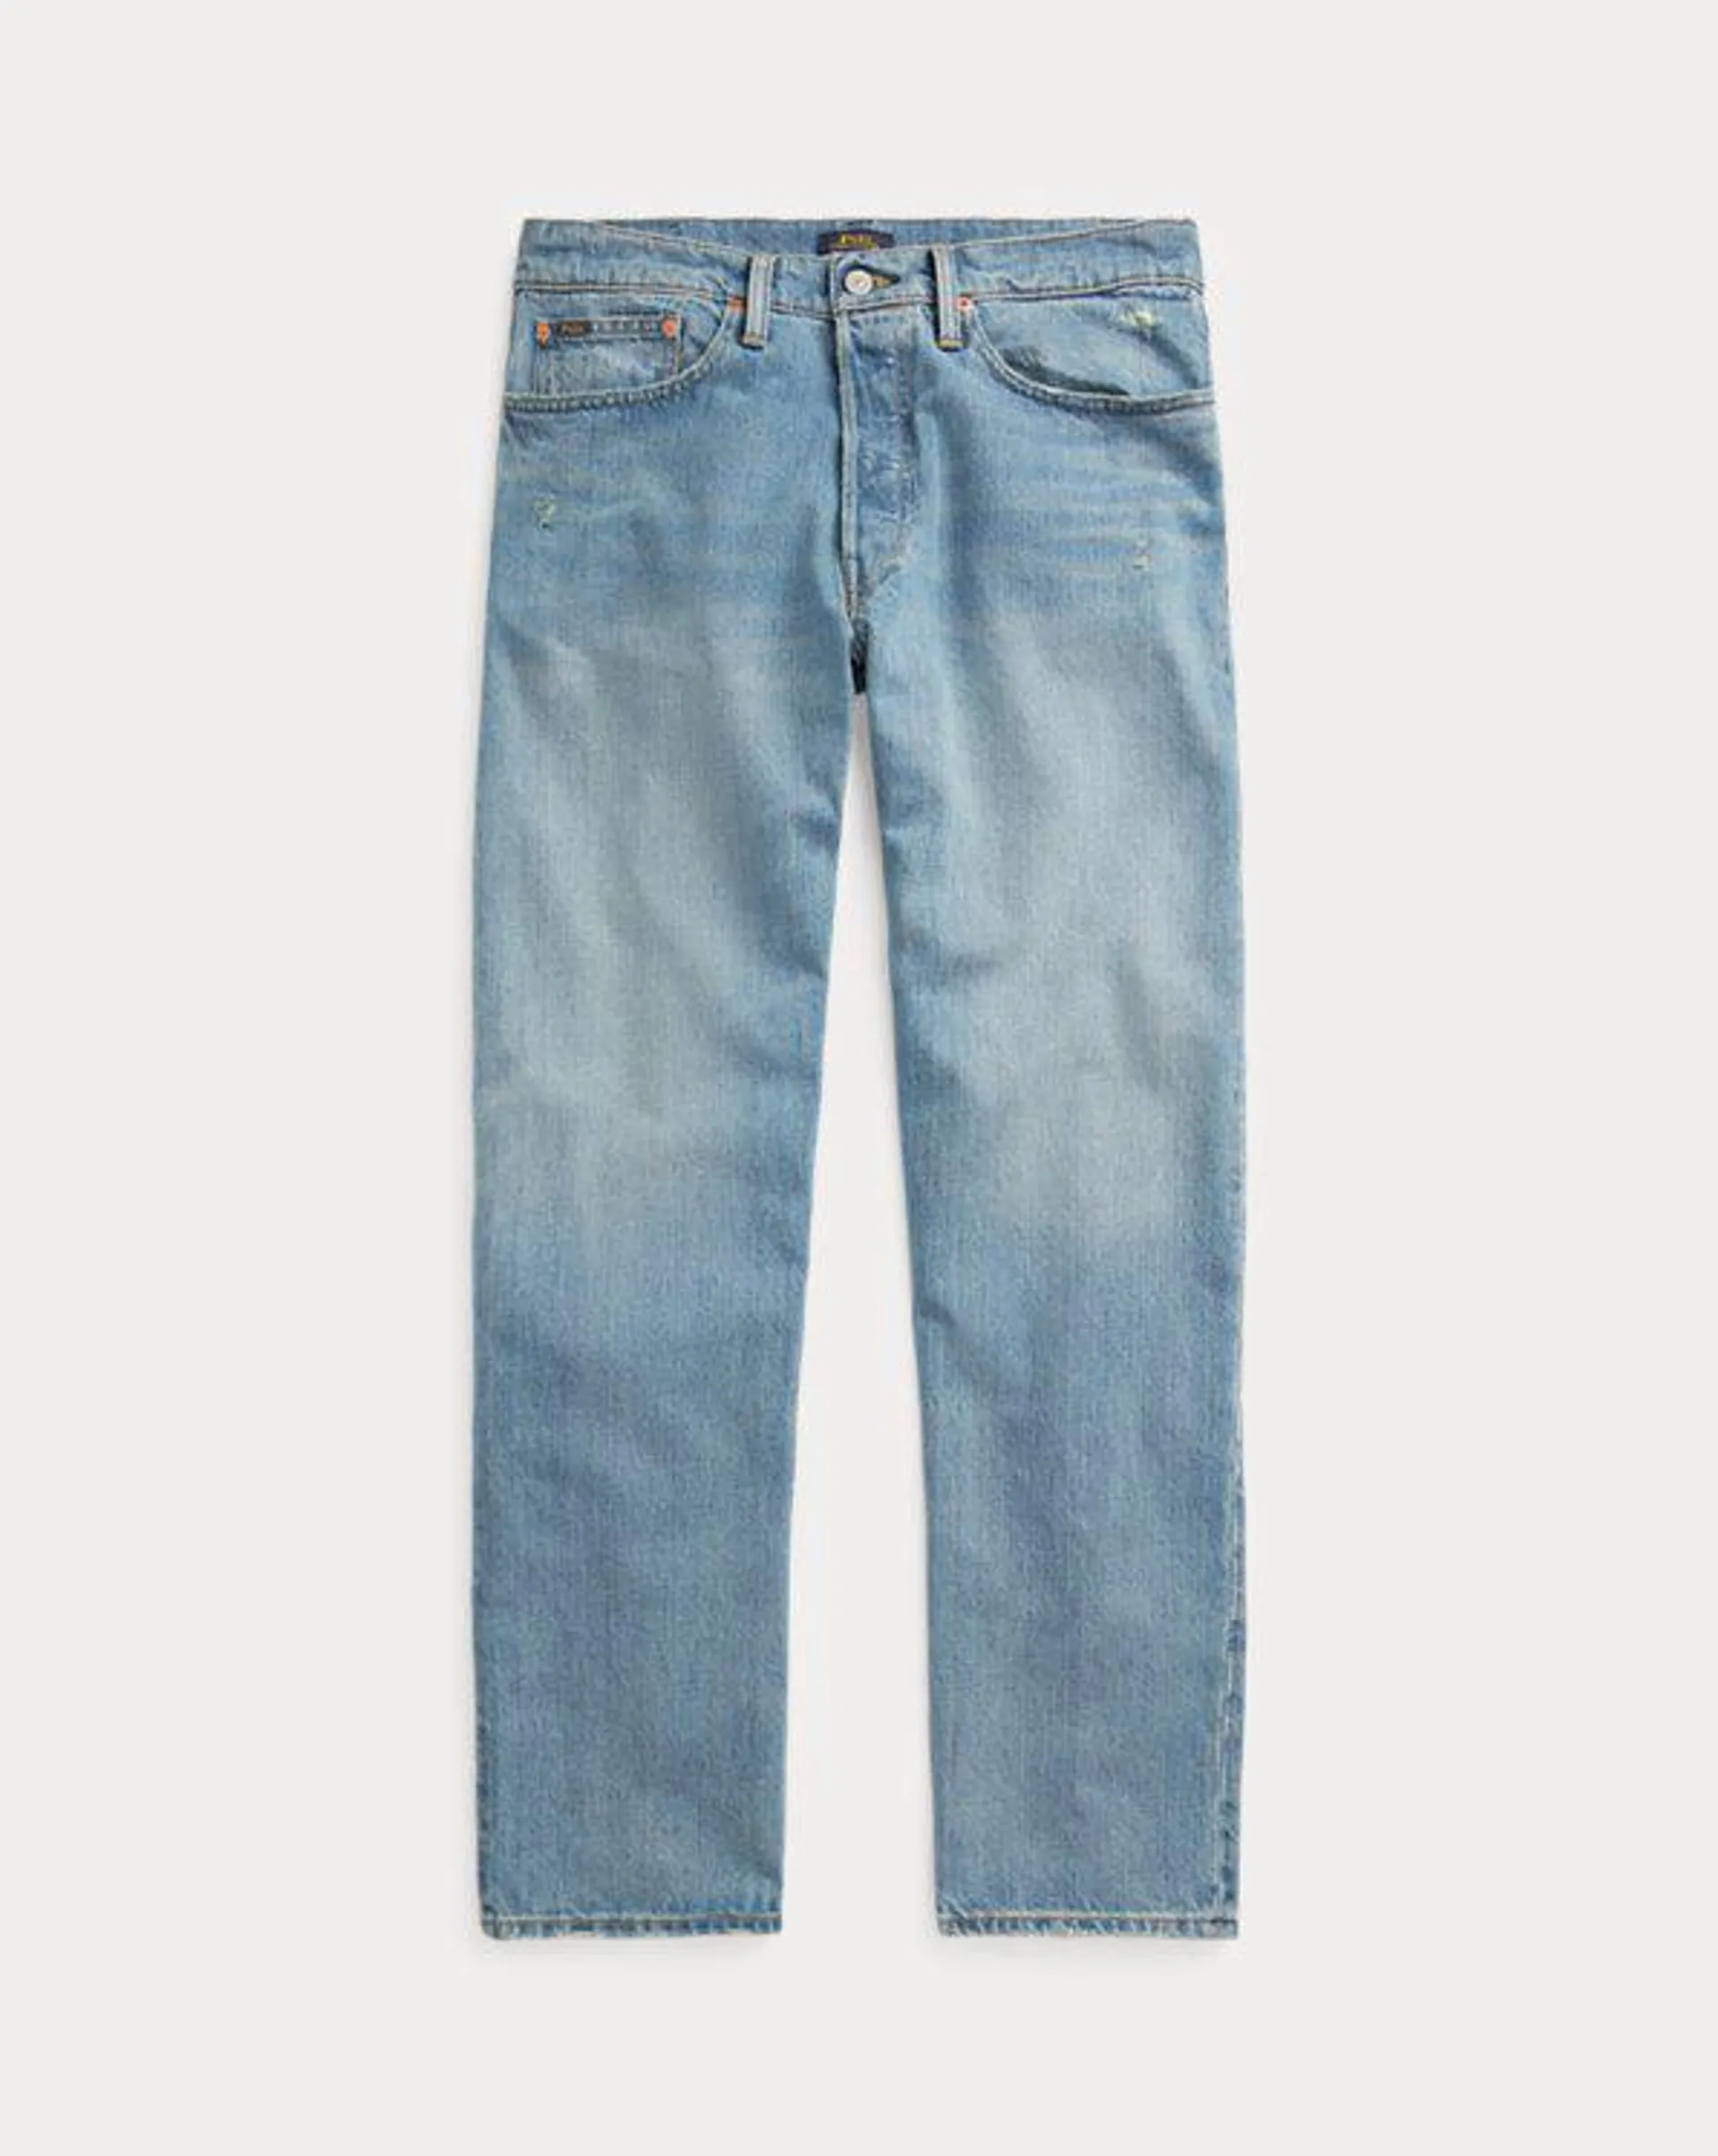 Vintage Classic Fit Jean